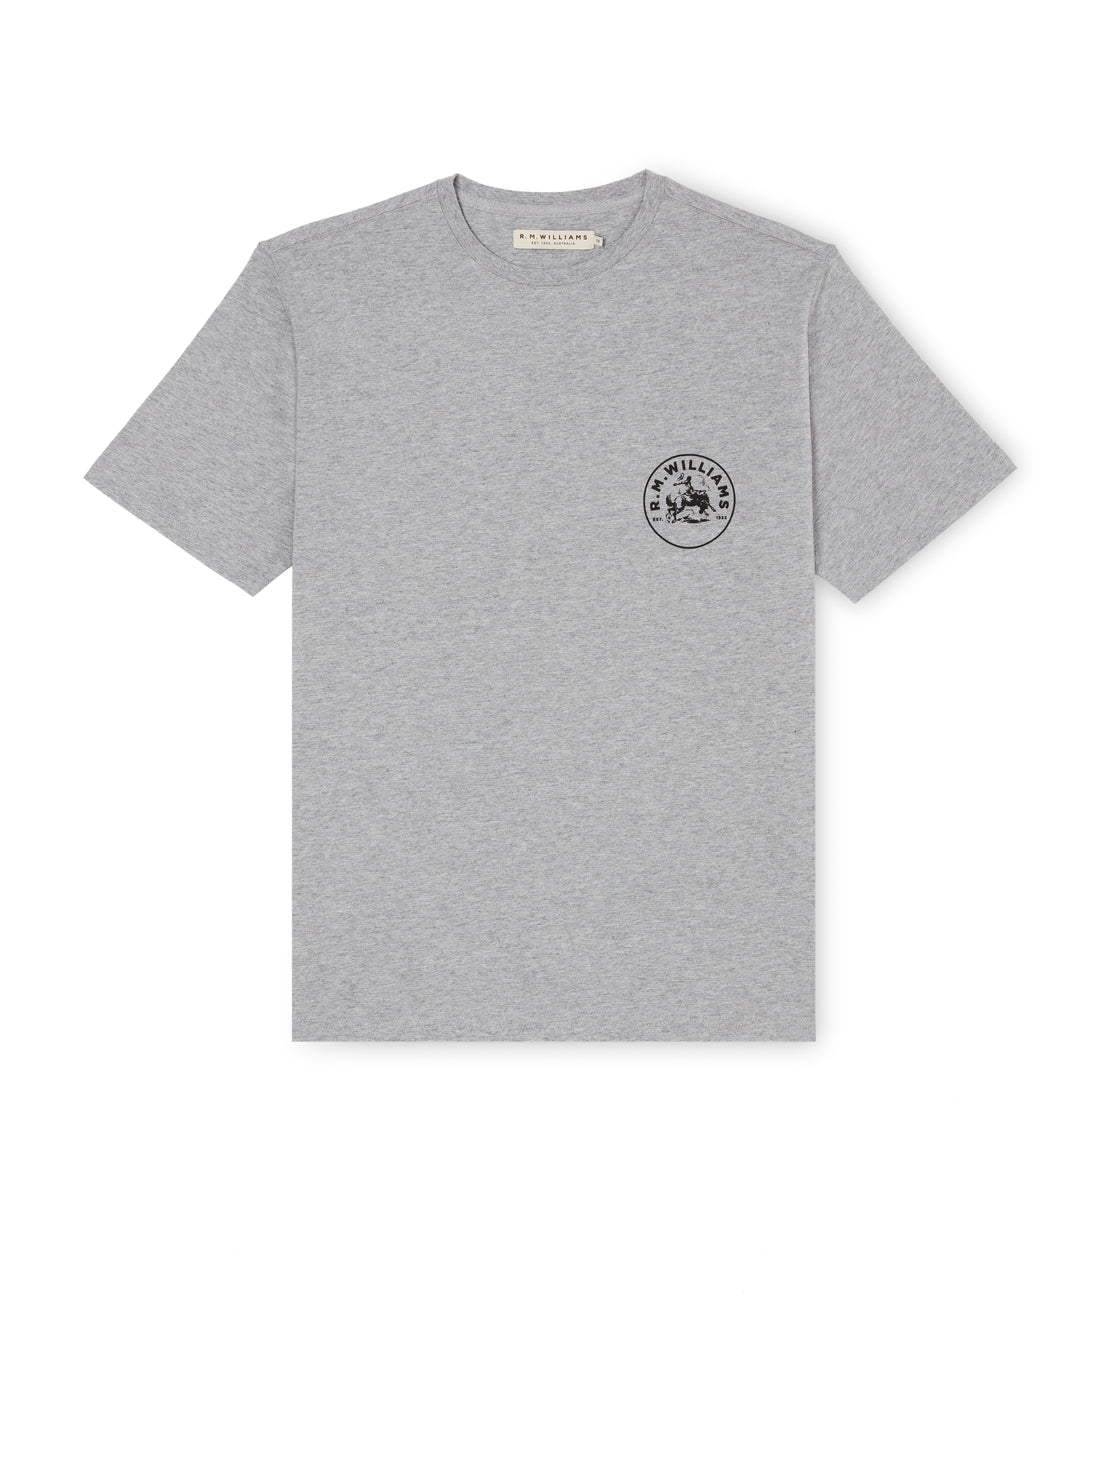 Wondai T-Shirt - Grey Marle/Black